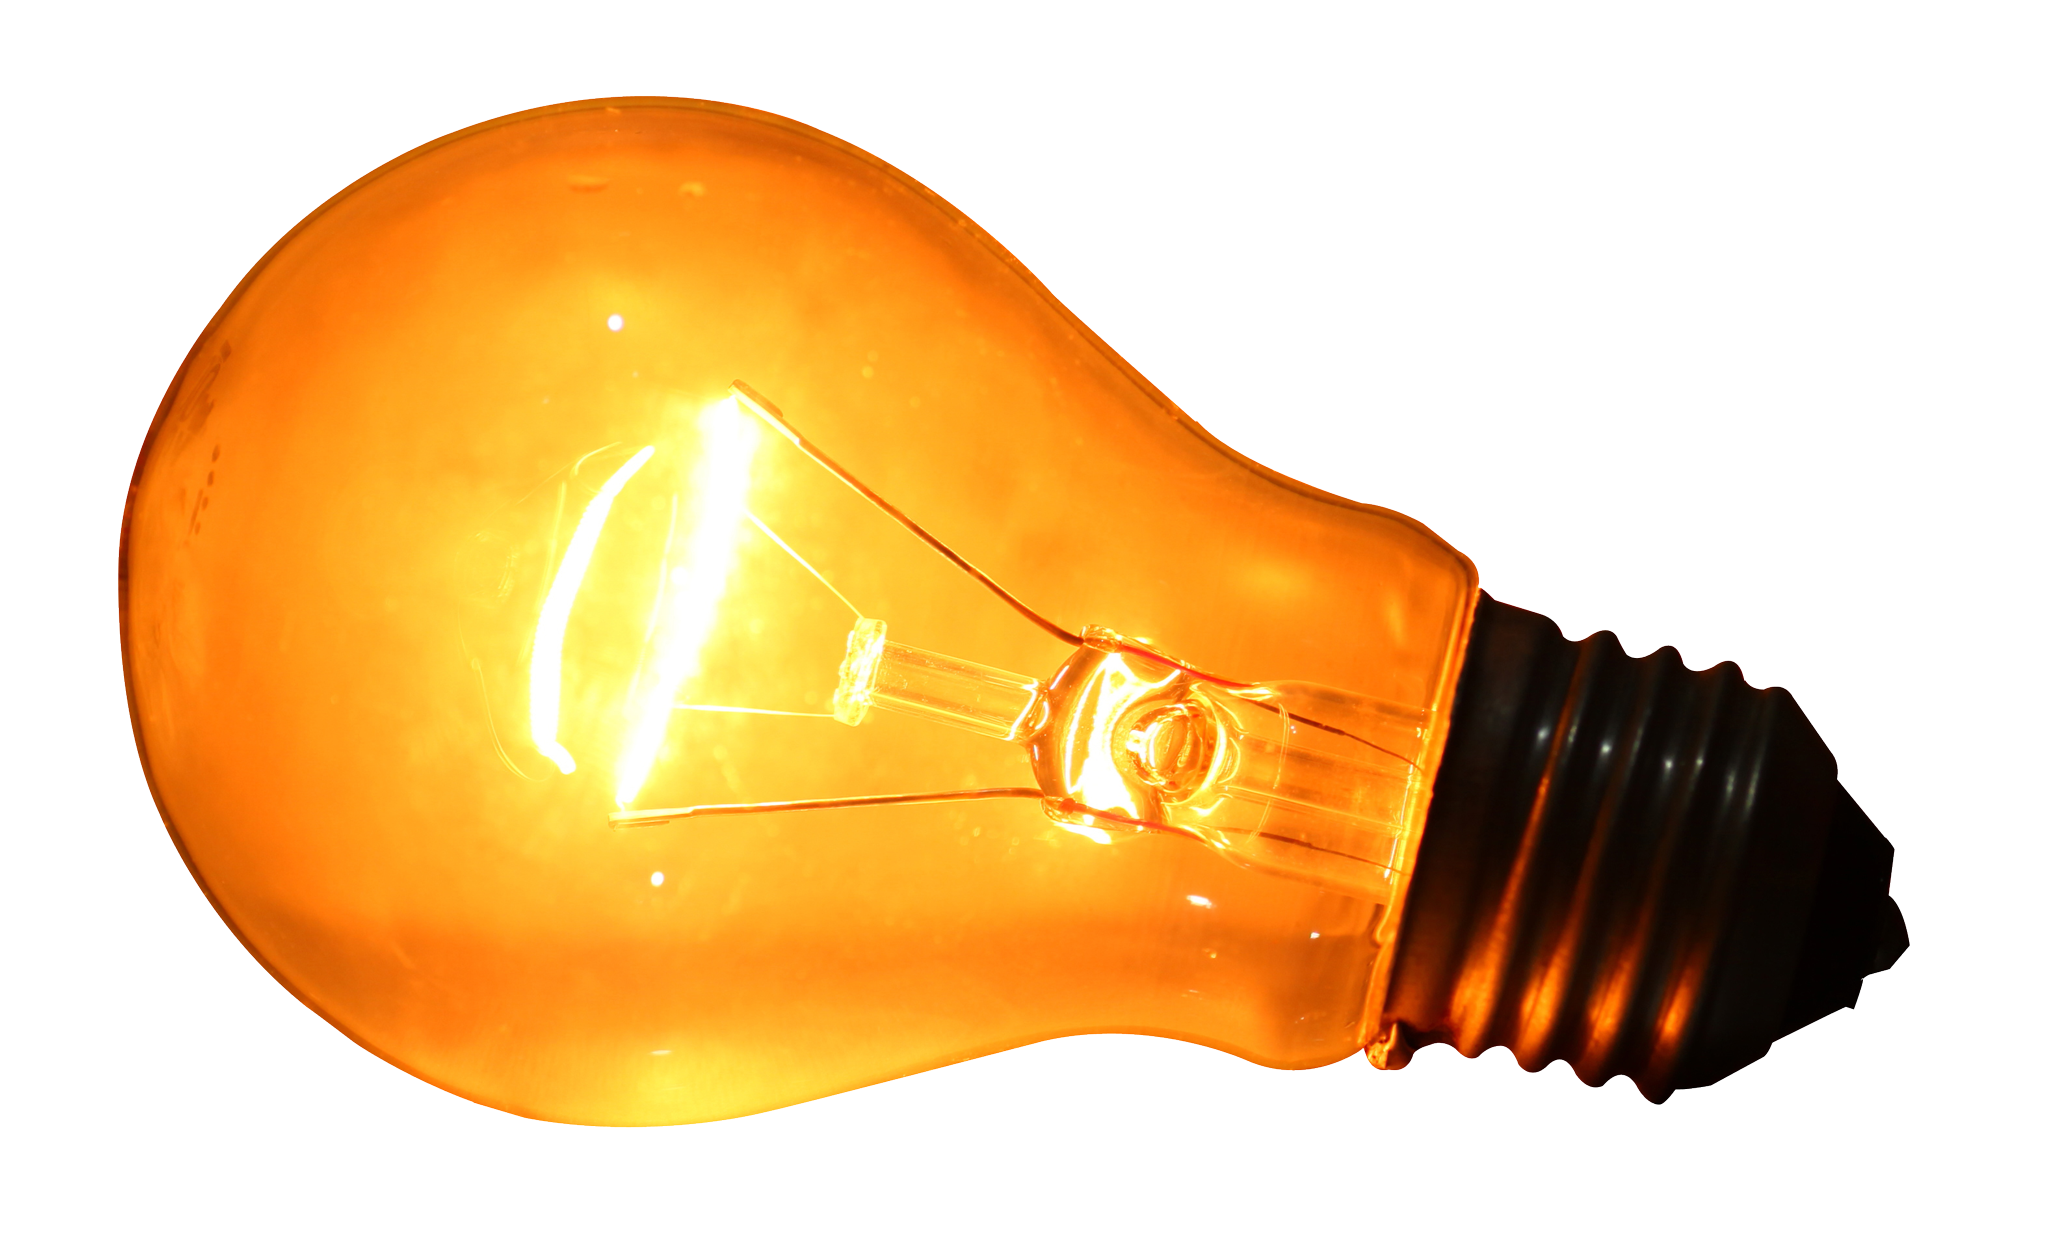 Download PNG image - Light Bulb PNG Transparent Image 